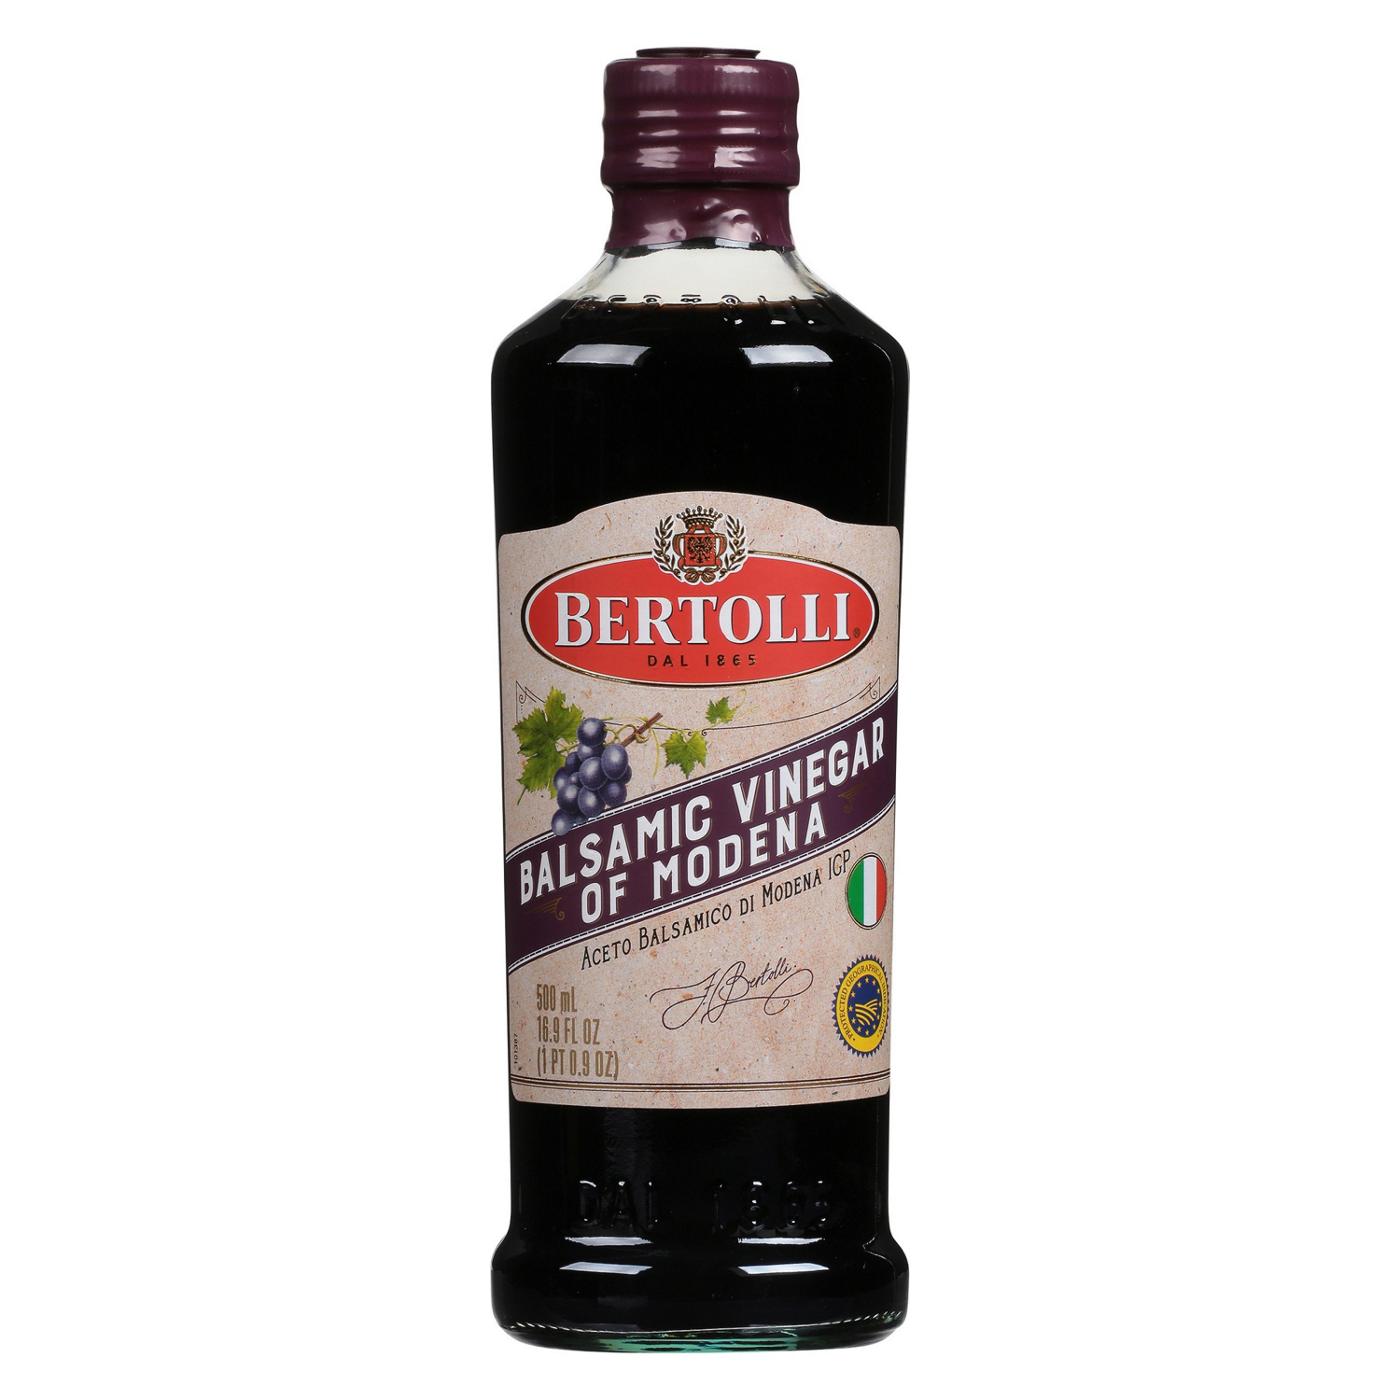 Bertolli Balsamic Vinegar; image 1 of 2